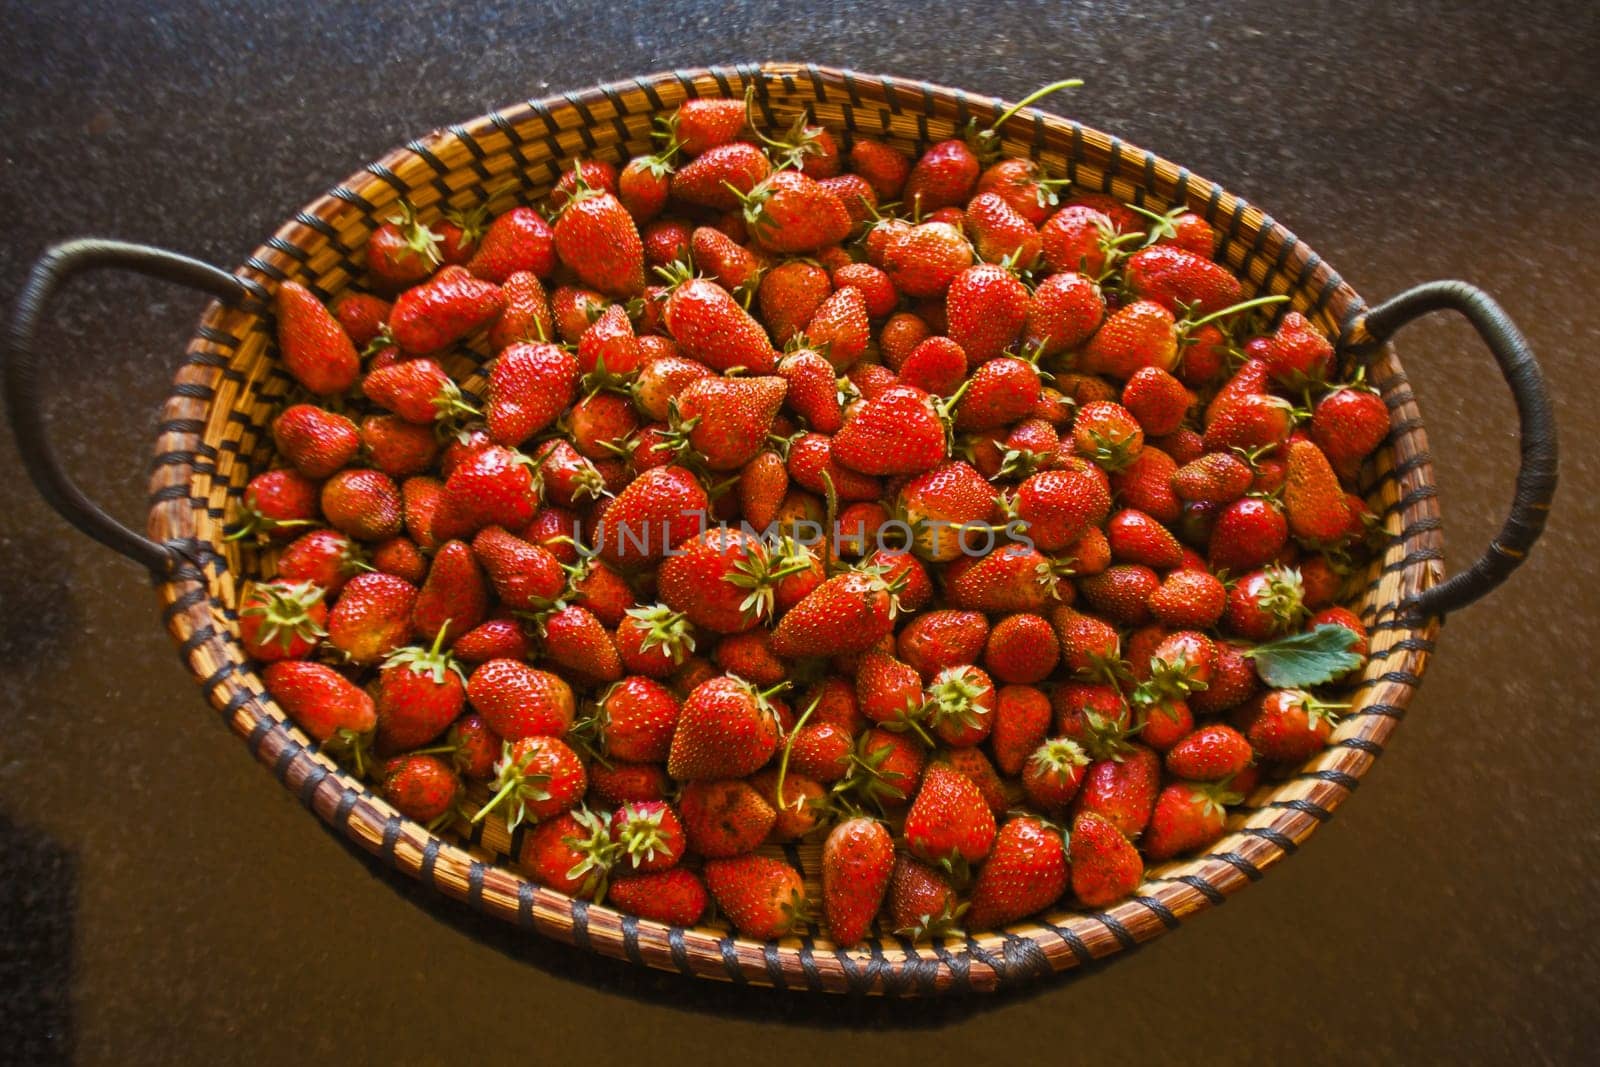 Fresh Strawberries 14665 by kobus_peche